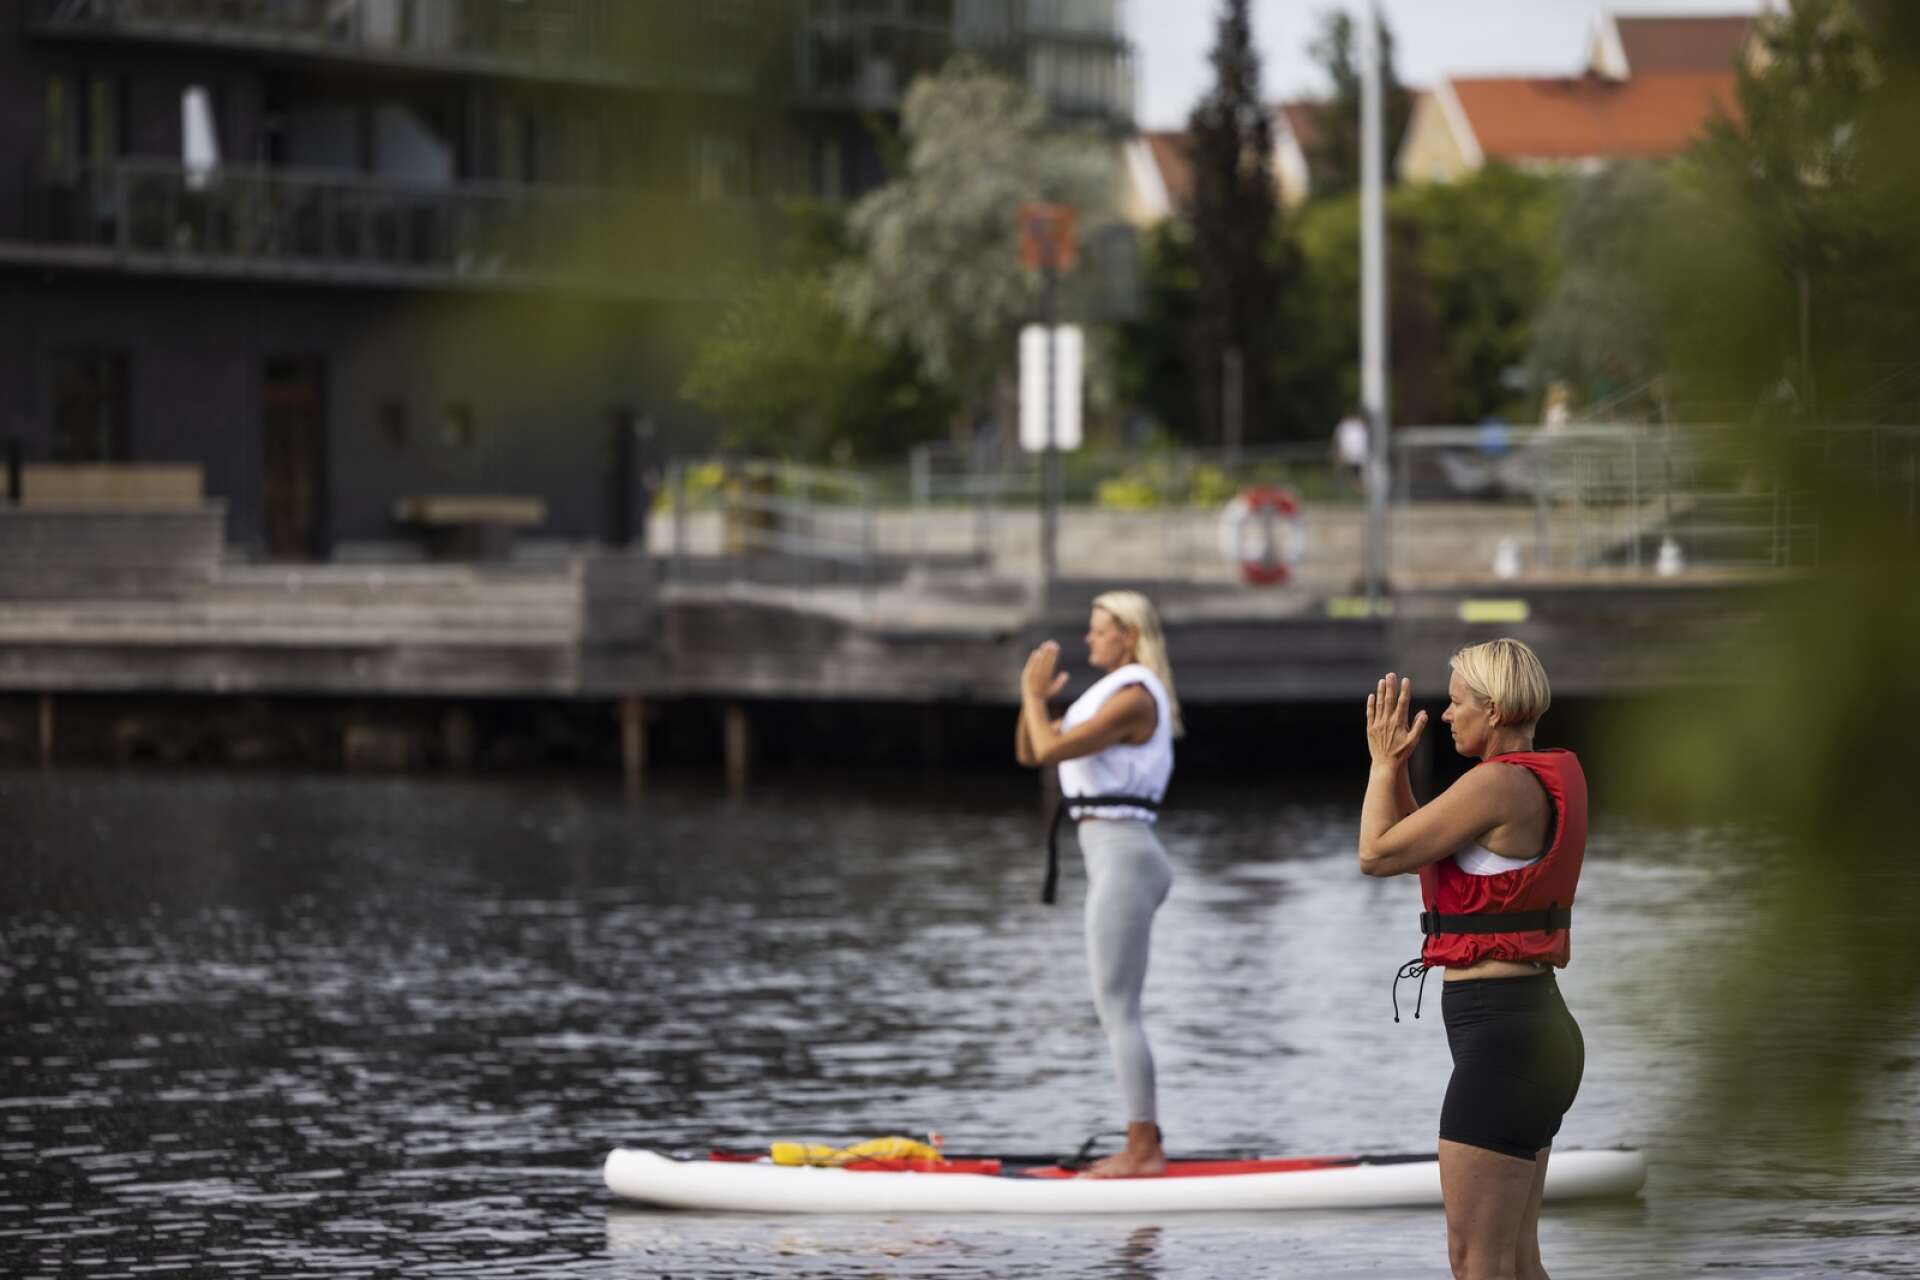 Från vänster: instruktören Anki Träff och Sara Olsson. Det är svårt att stå på brädorna när båtarna åker förbi och skapar vågor.